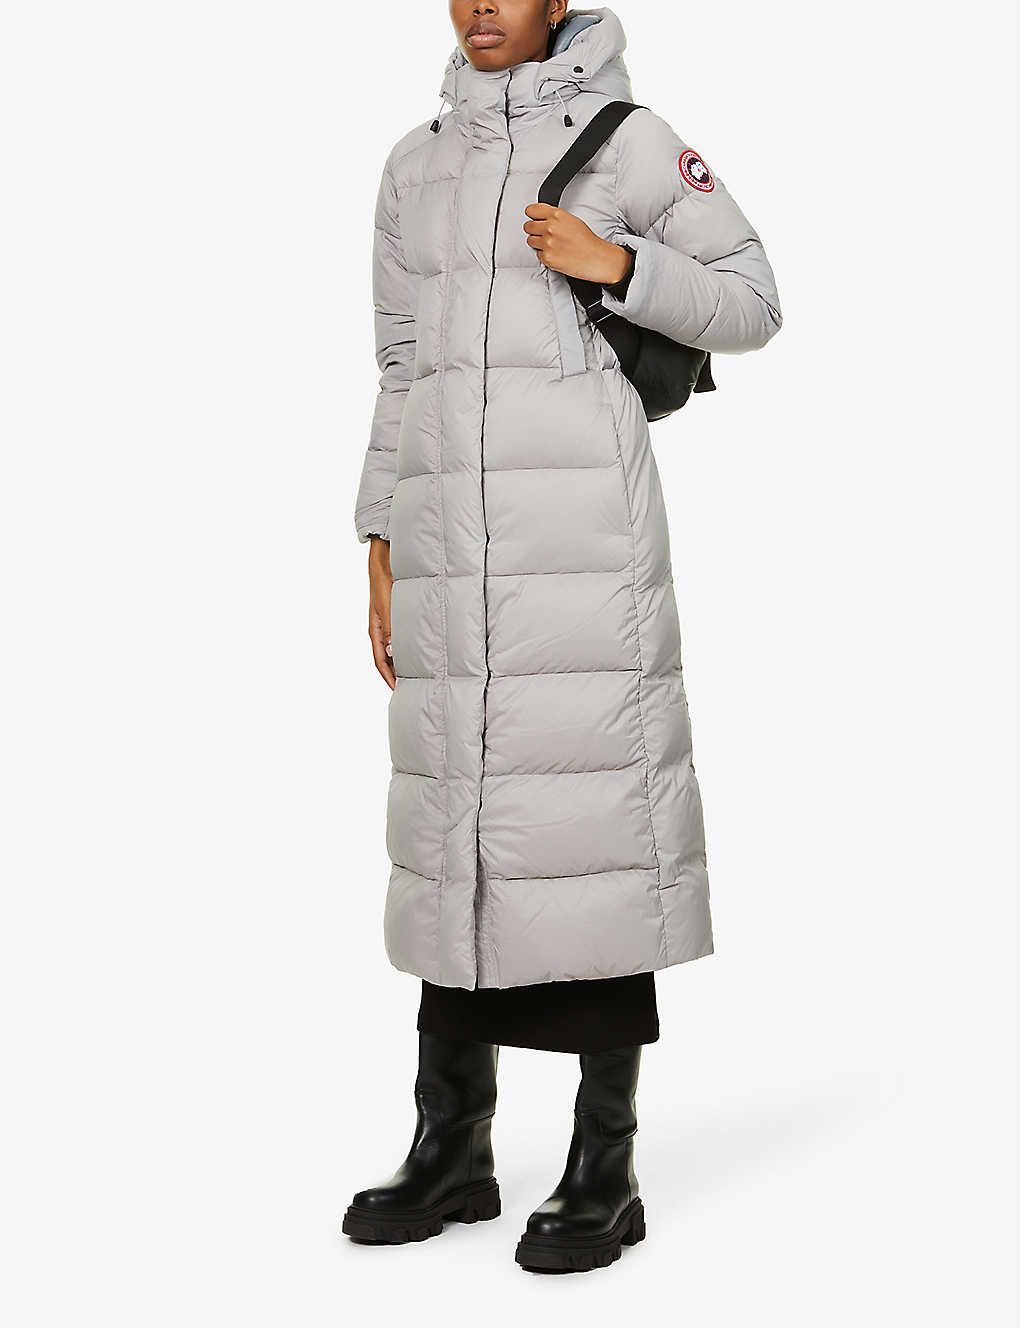 UK New Ladies Winter Warm Parka Faux Fur Trim Hood Coat Thick Cotton Jacket 